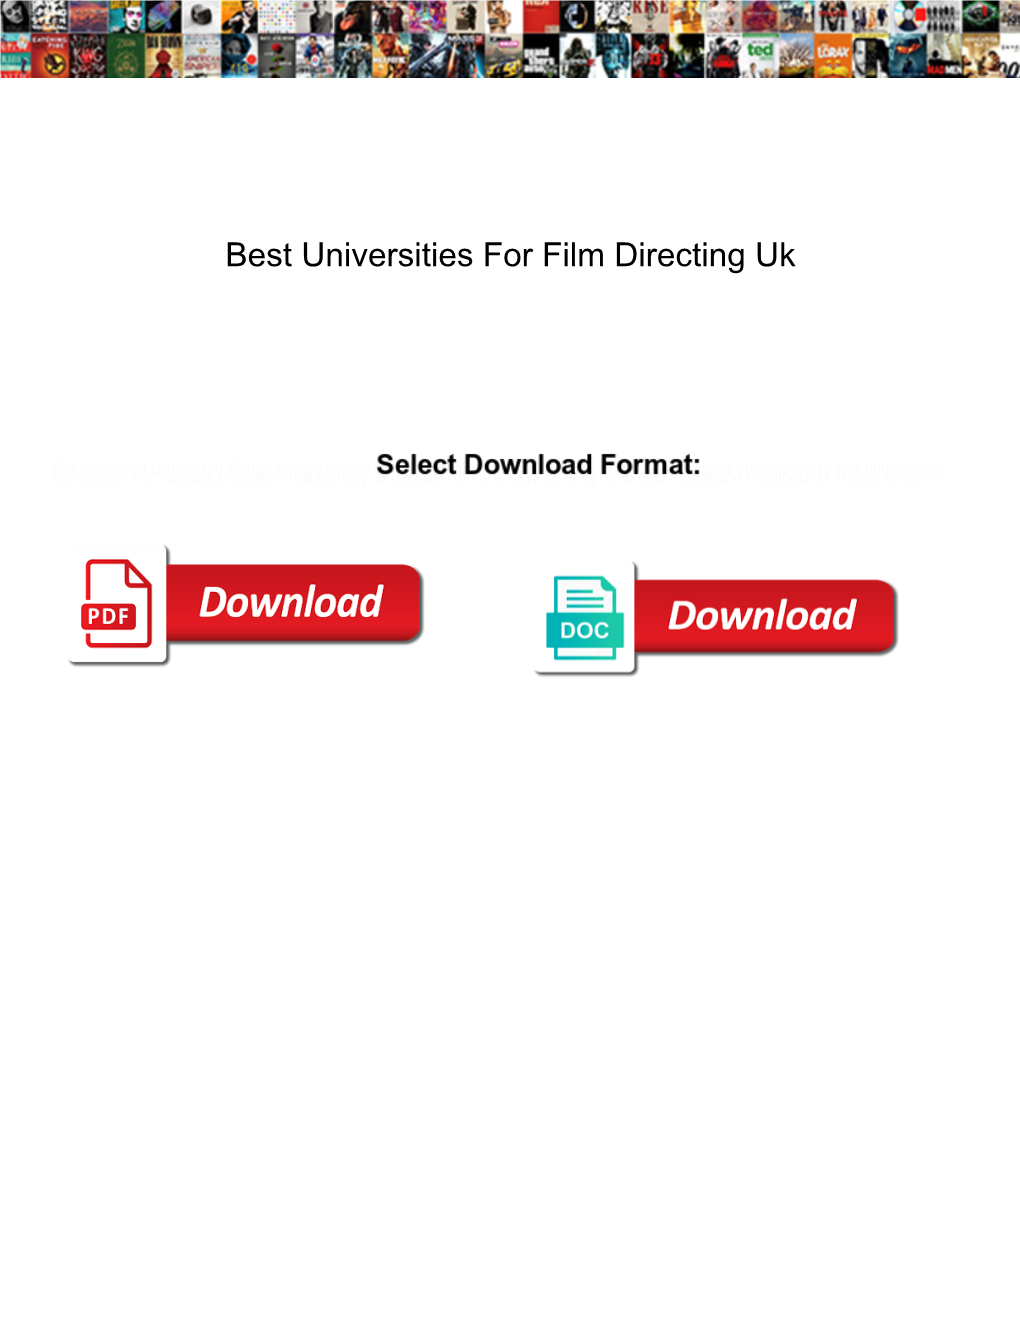 Best Universities for Film Directing Uk